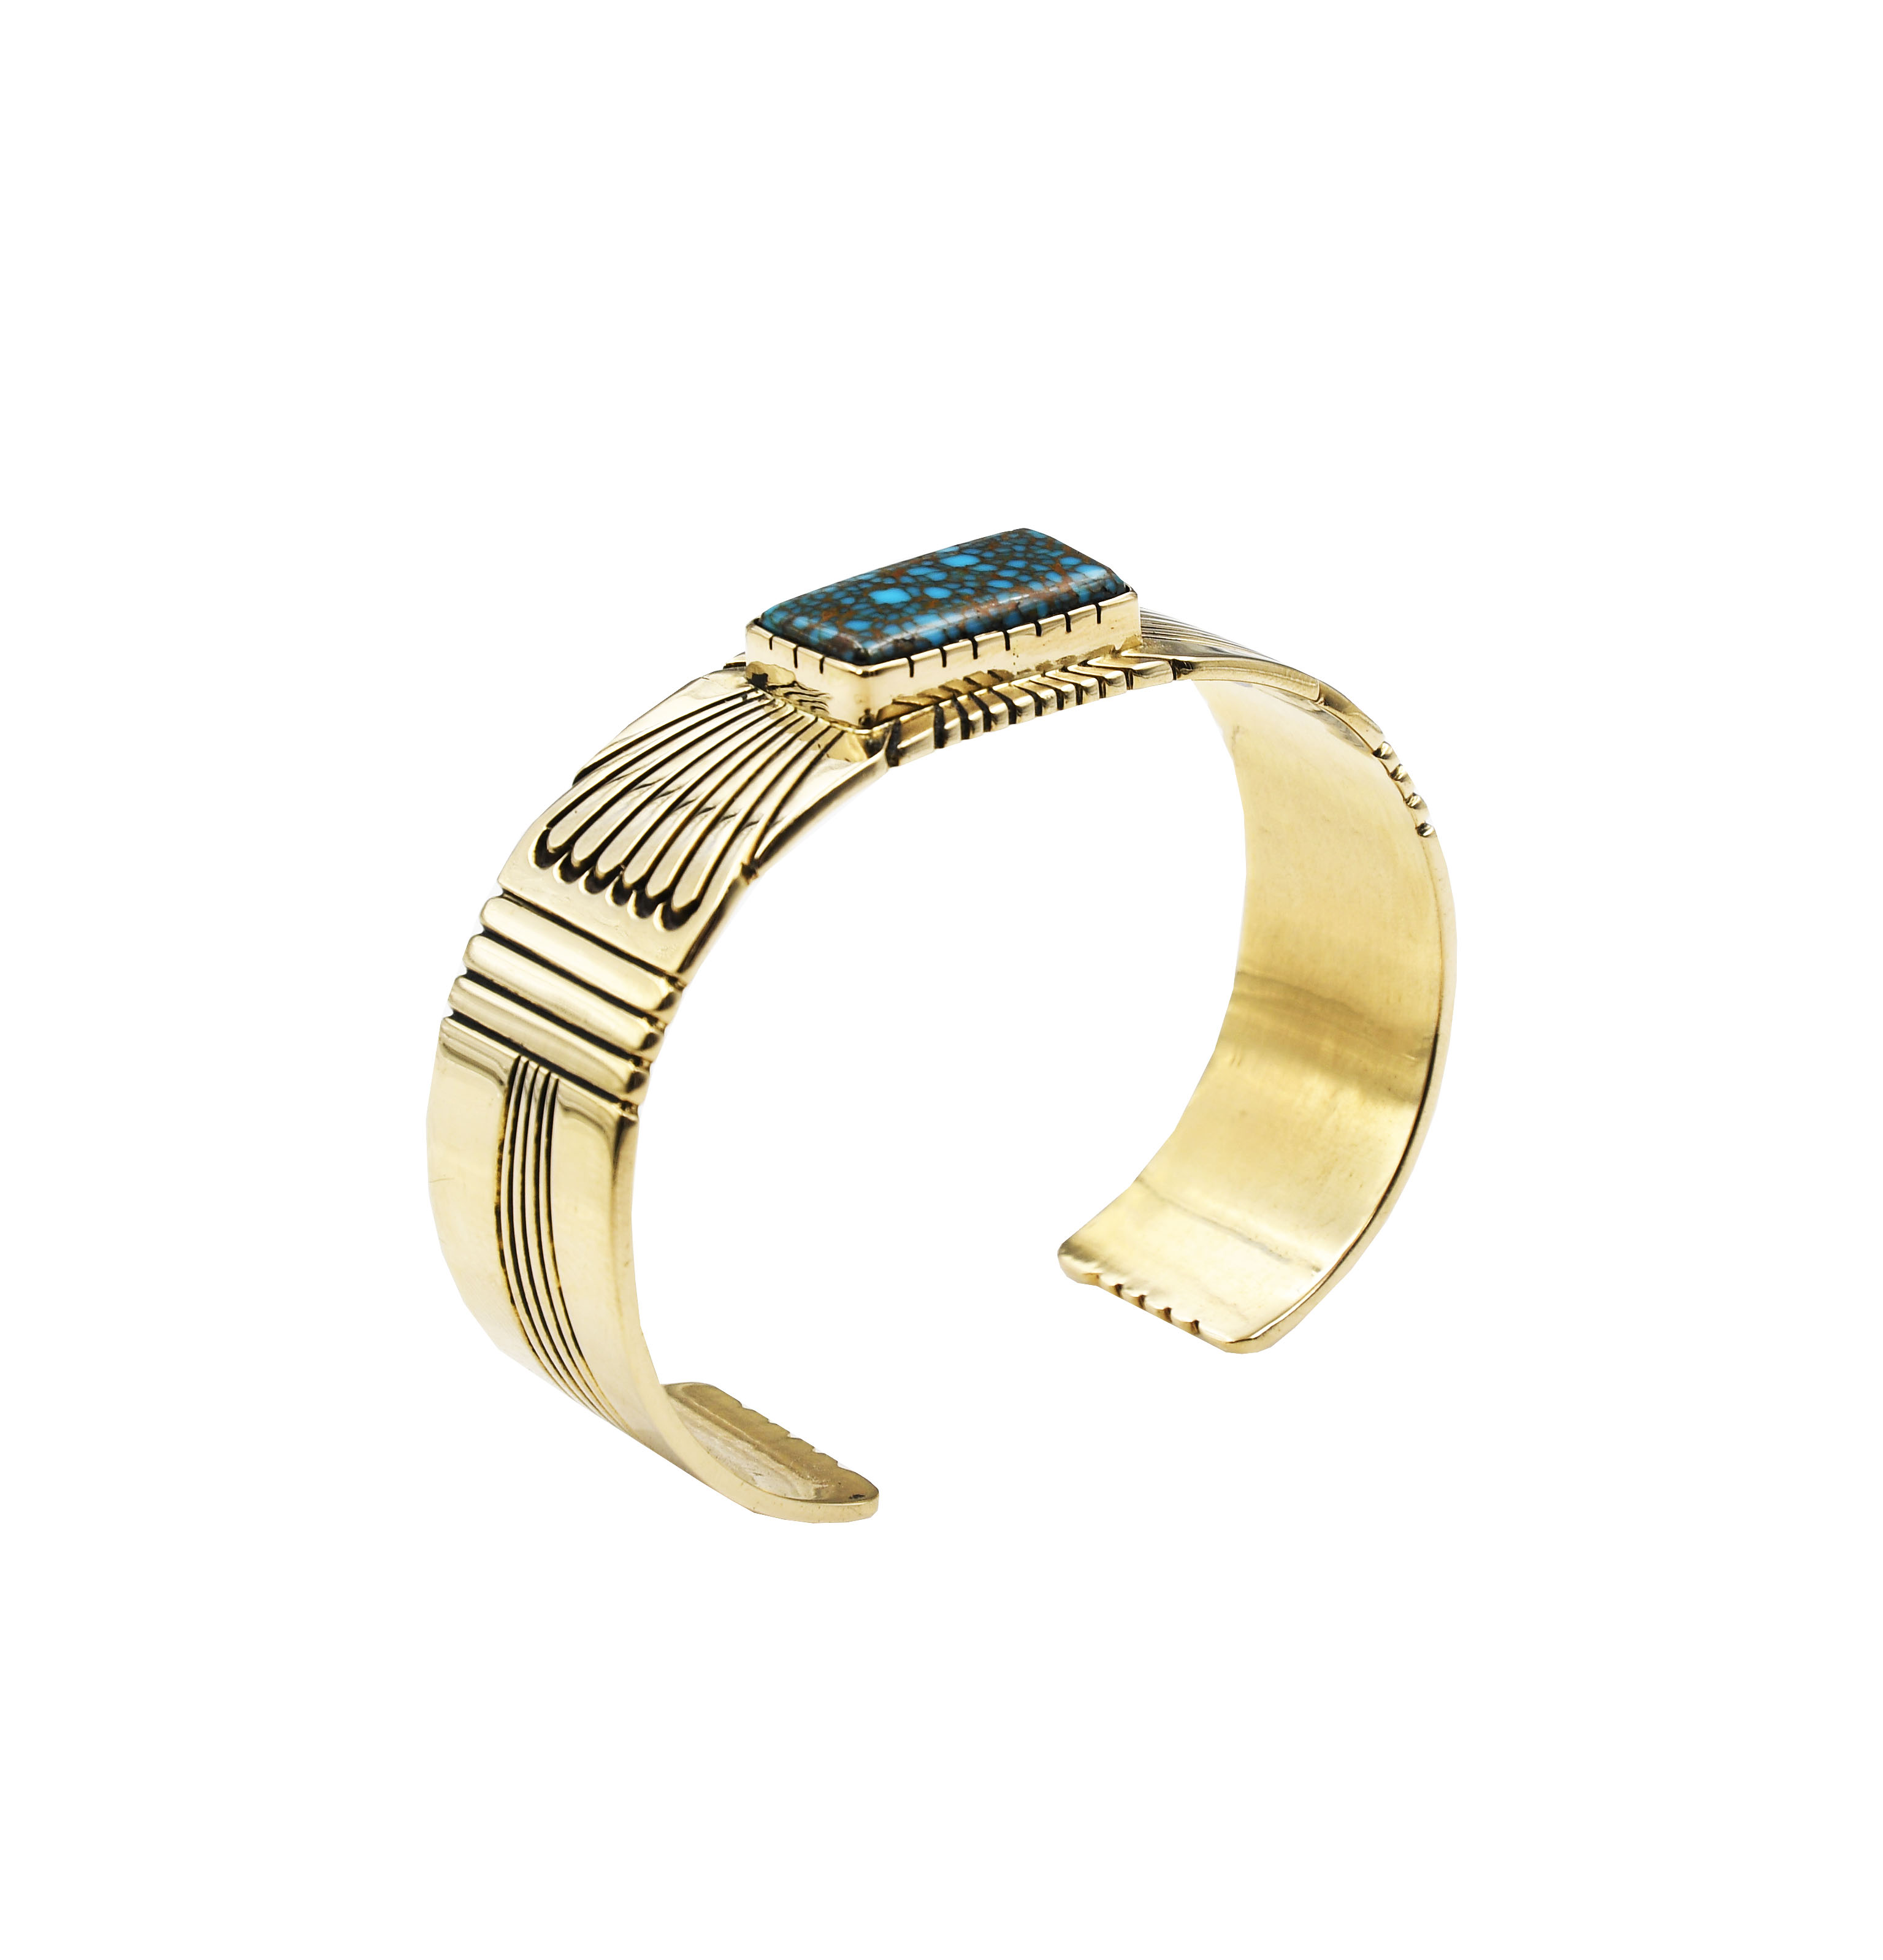 Tom Jim 14k Gold Turquoise Bracelet | Faust Gallery